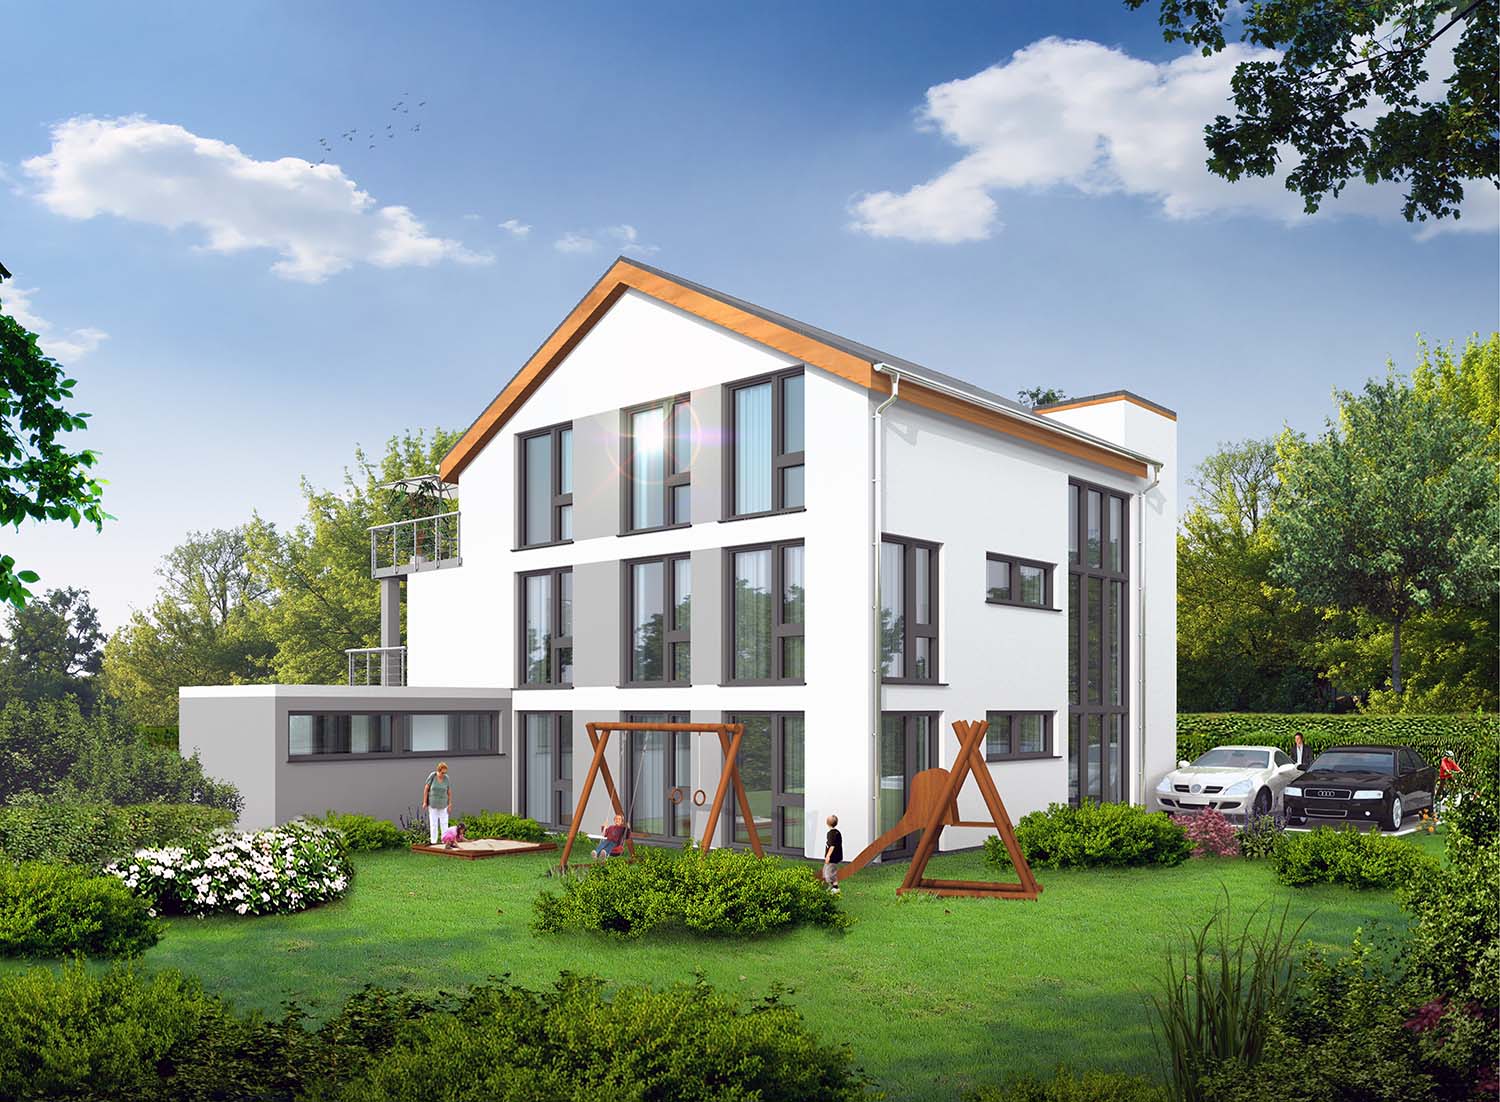 3D - Architektur Visualisierung Innenhof-Seite Neubau Mehrfamilienhaus in Oestrich-Winkel für Arora UG / Frankfurt a. Main (Jahr 2020)